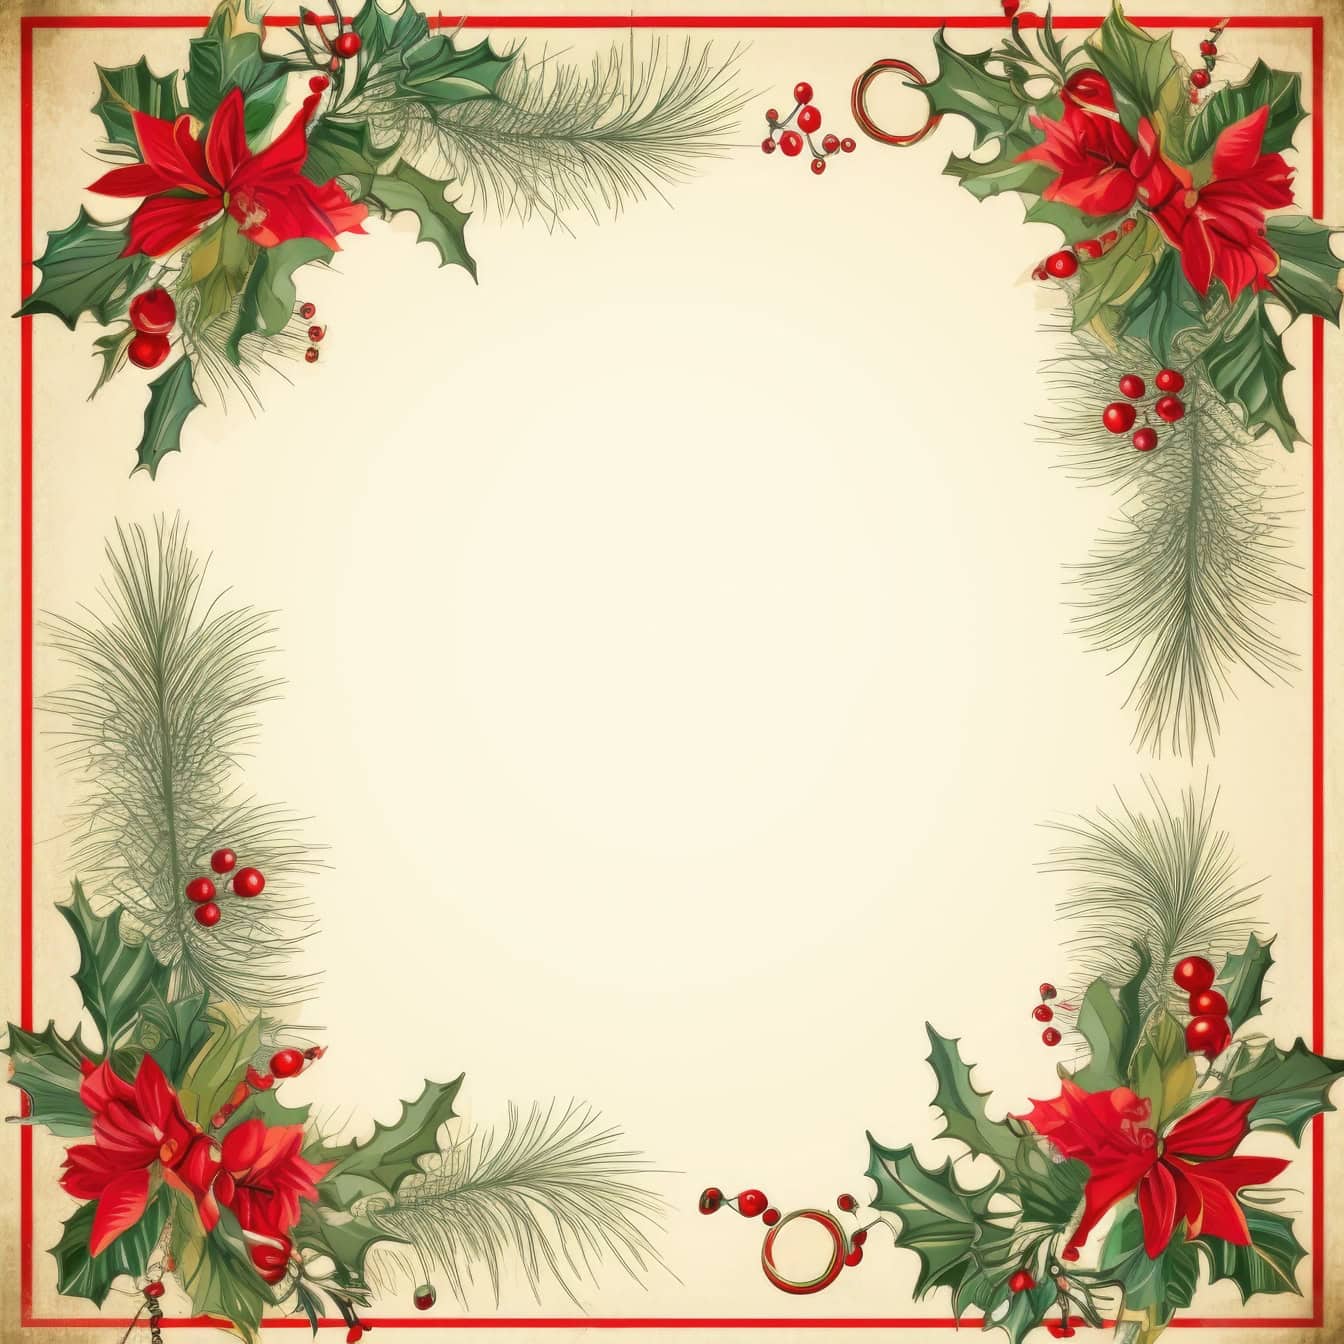 Ornamentální šablona vánočního a novoročního přání v retro stylu se čtvercovým rámečkem s červenými bobulemi a zelenými listy